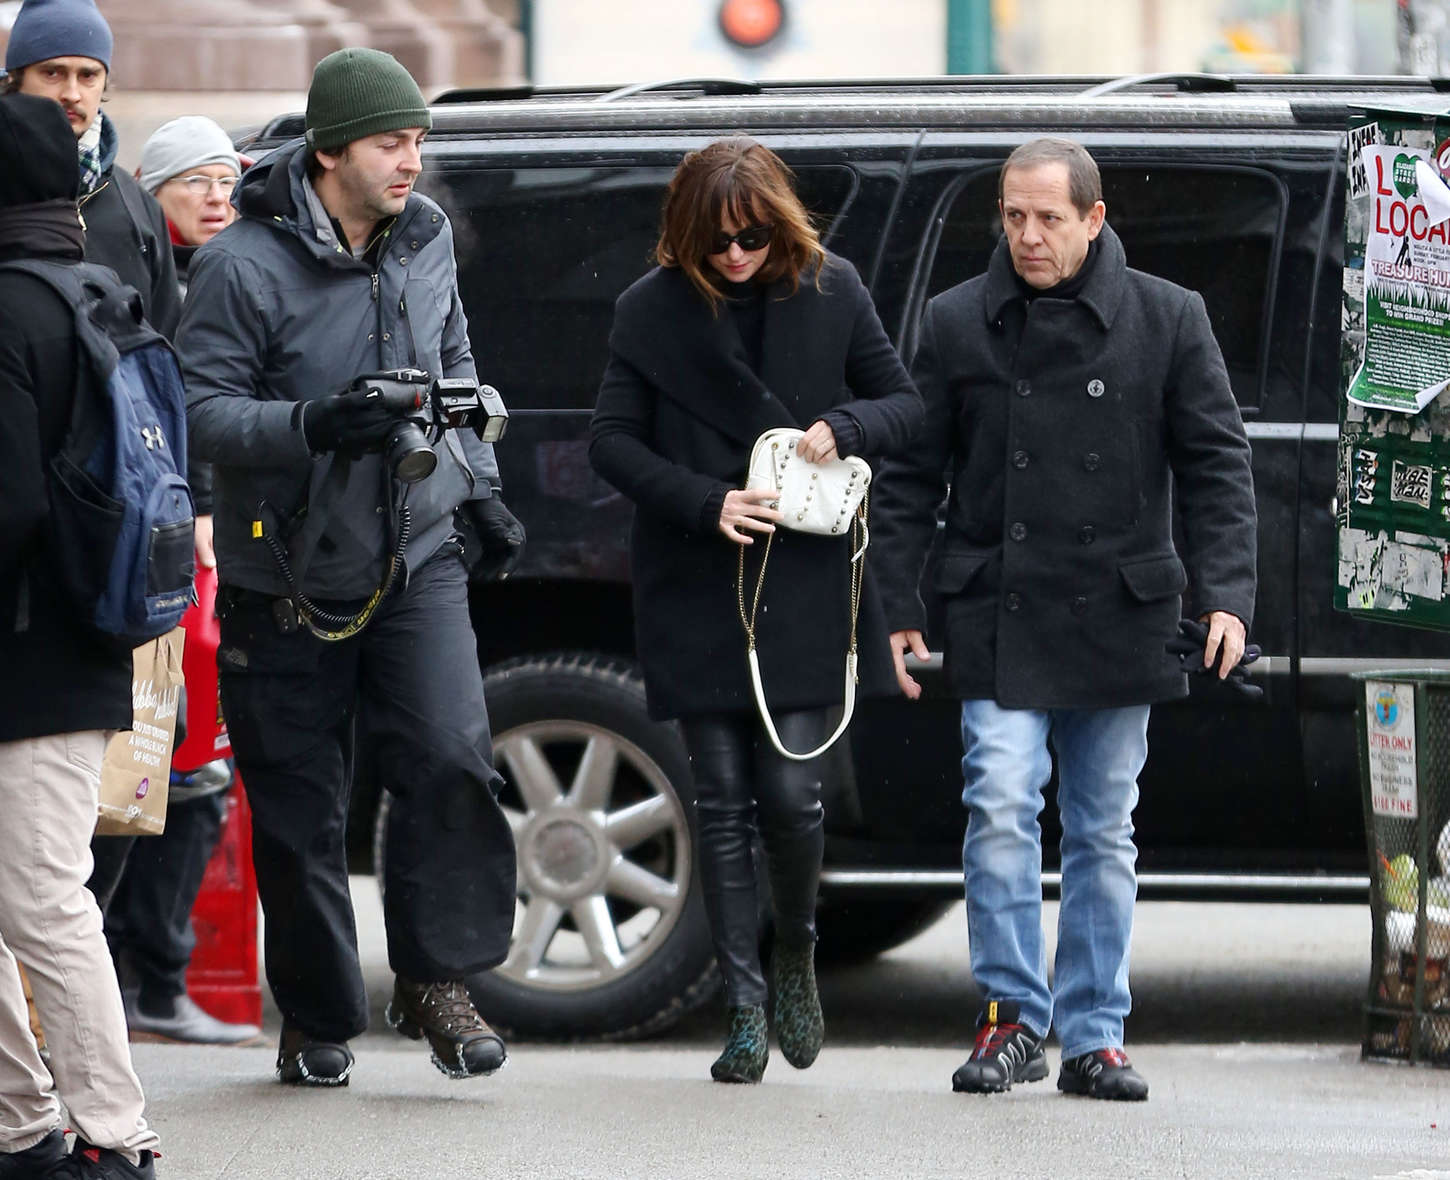 Dakota Johnson was seen walking around Manhattan